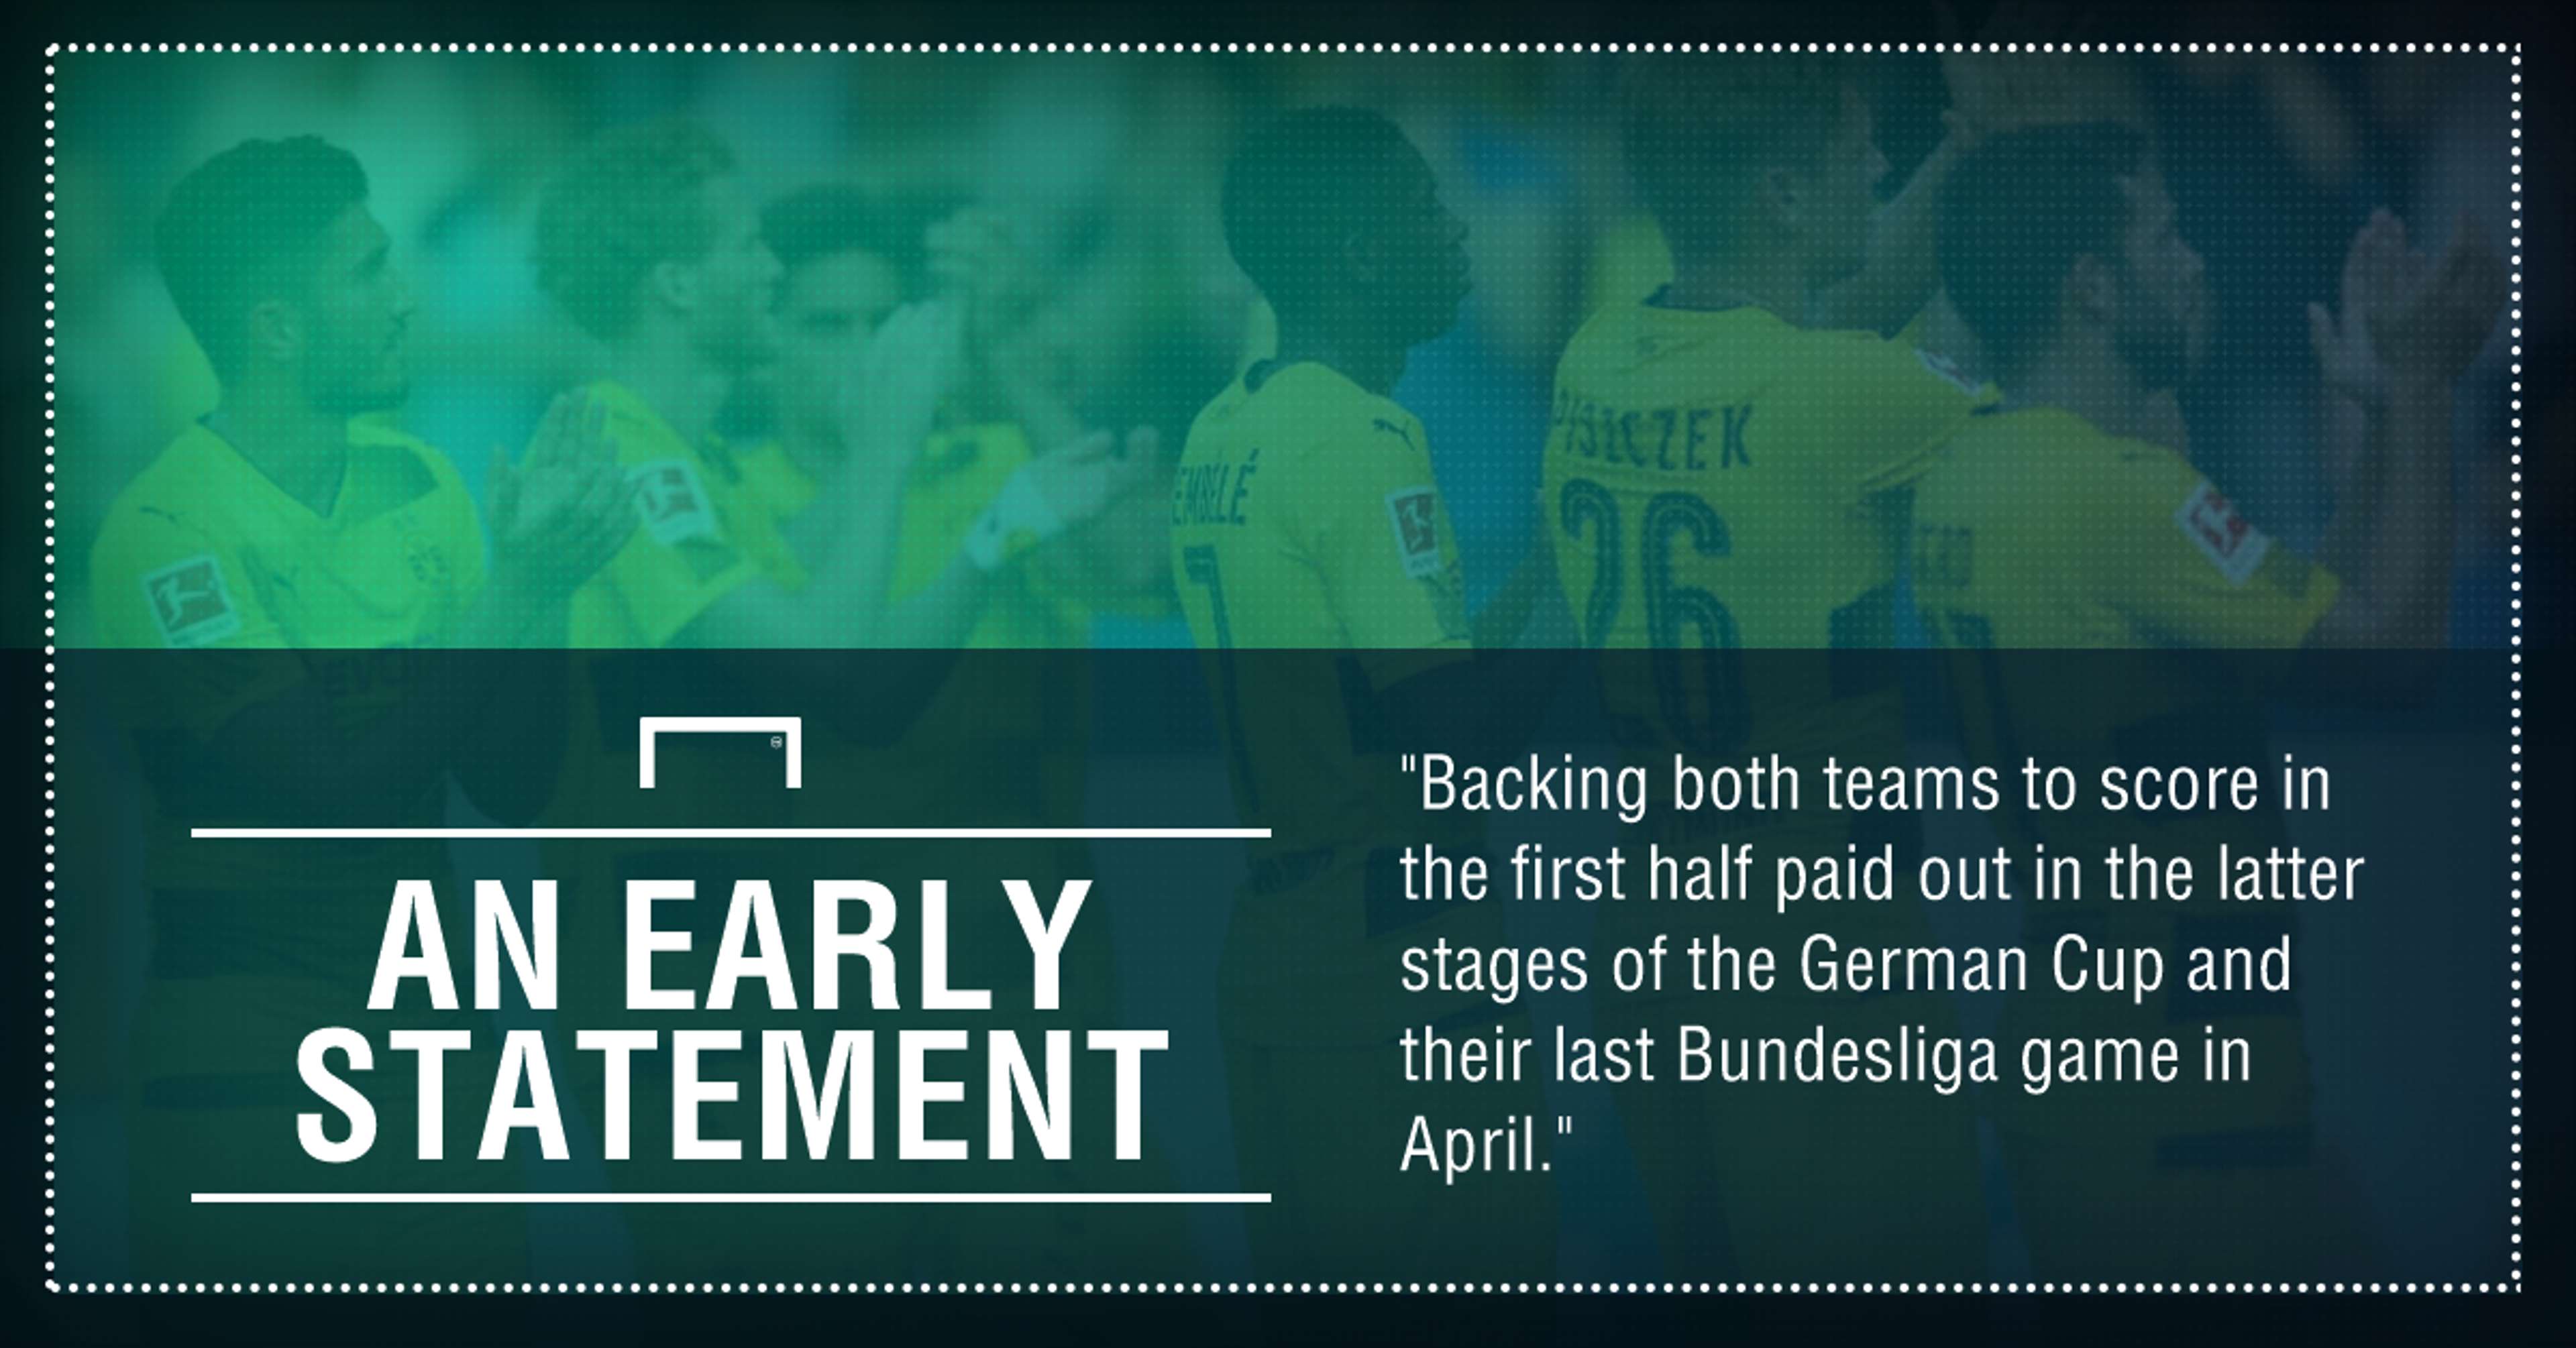 GFX Borussia Dortmund Bauern Munich betting